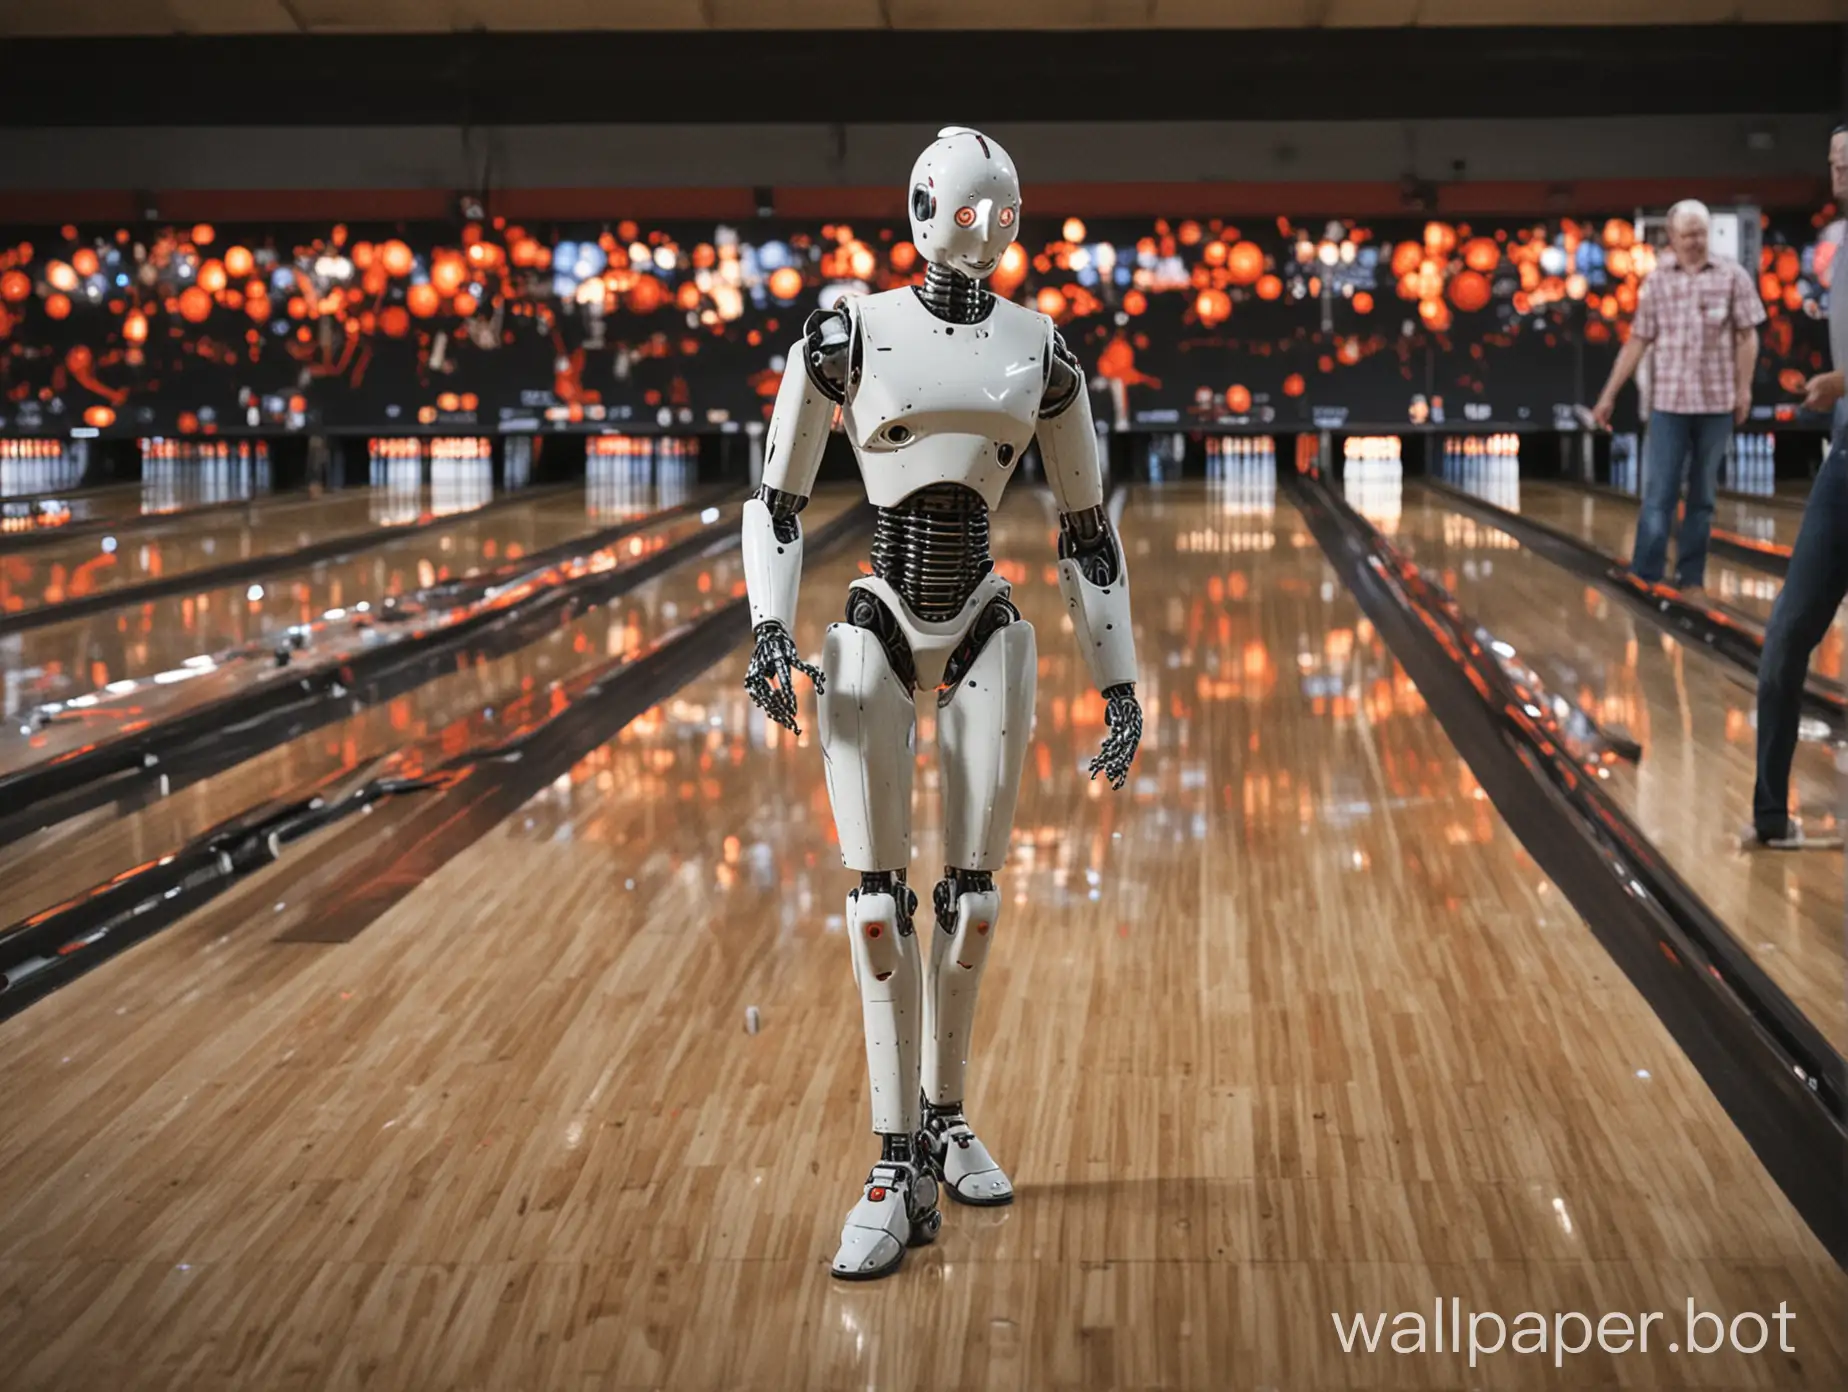 tenpin bowling robot in the future